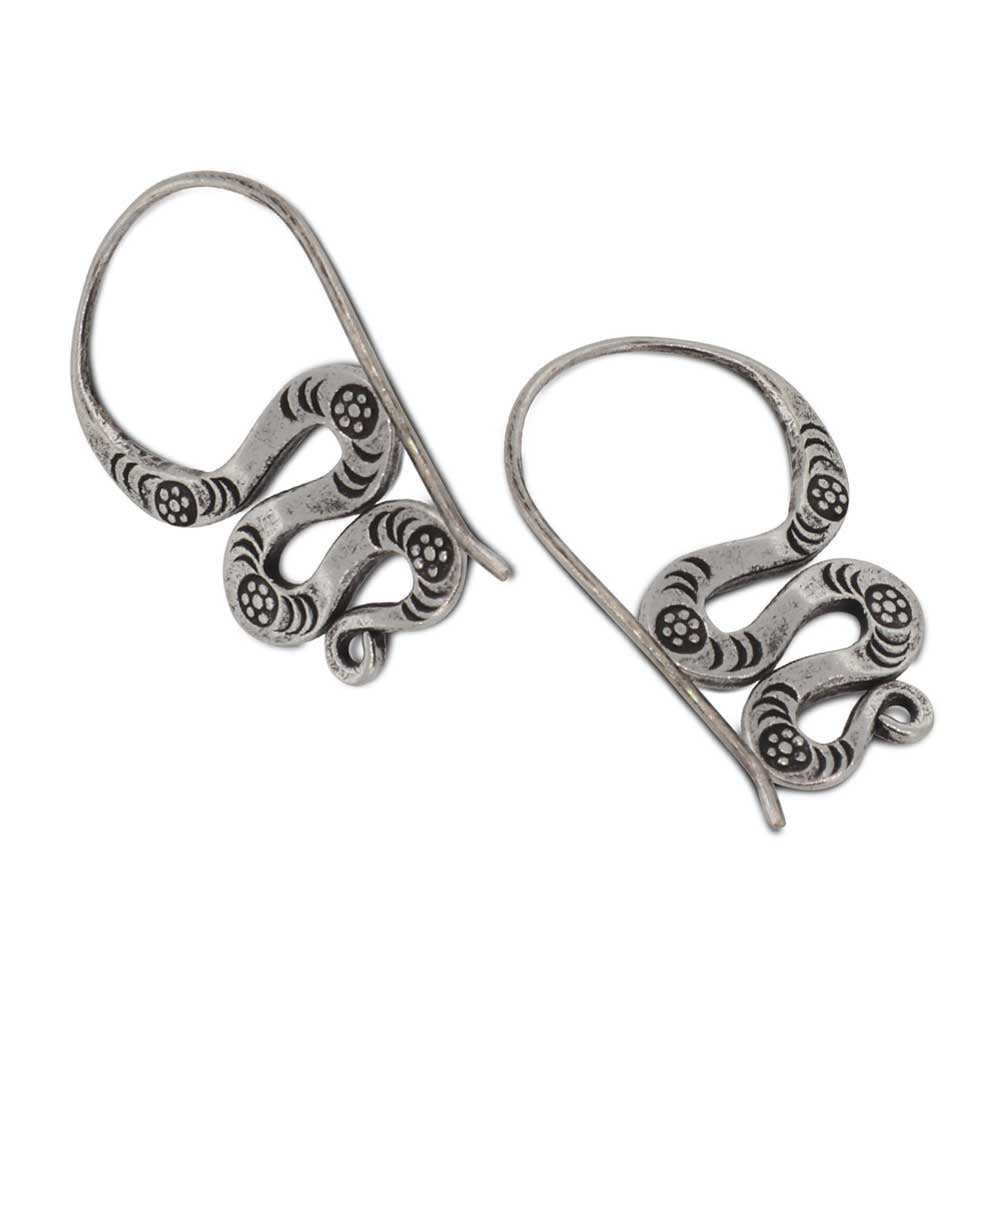 Threader snake earrings